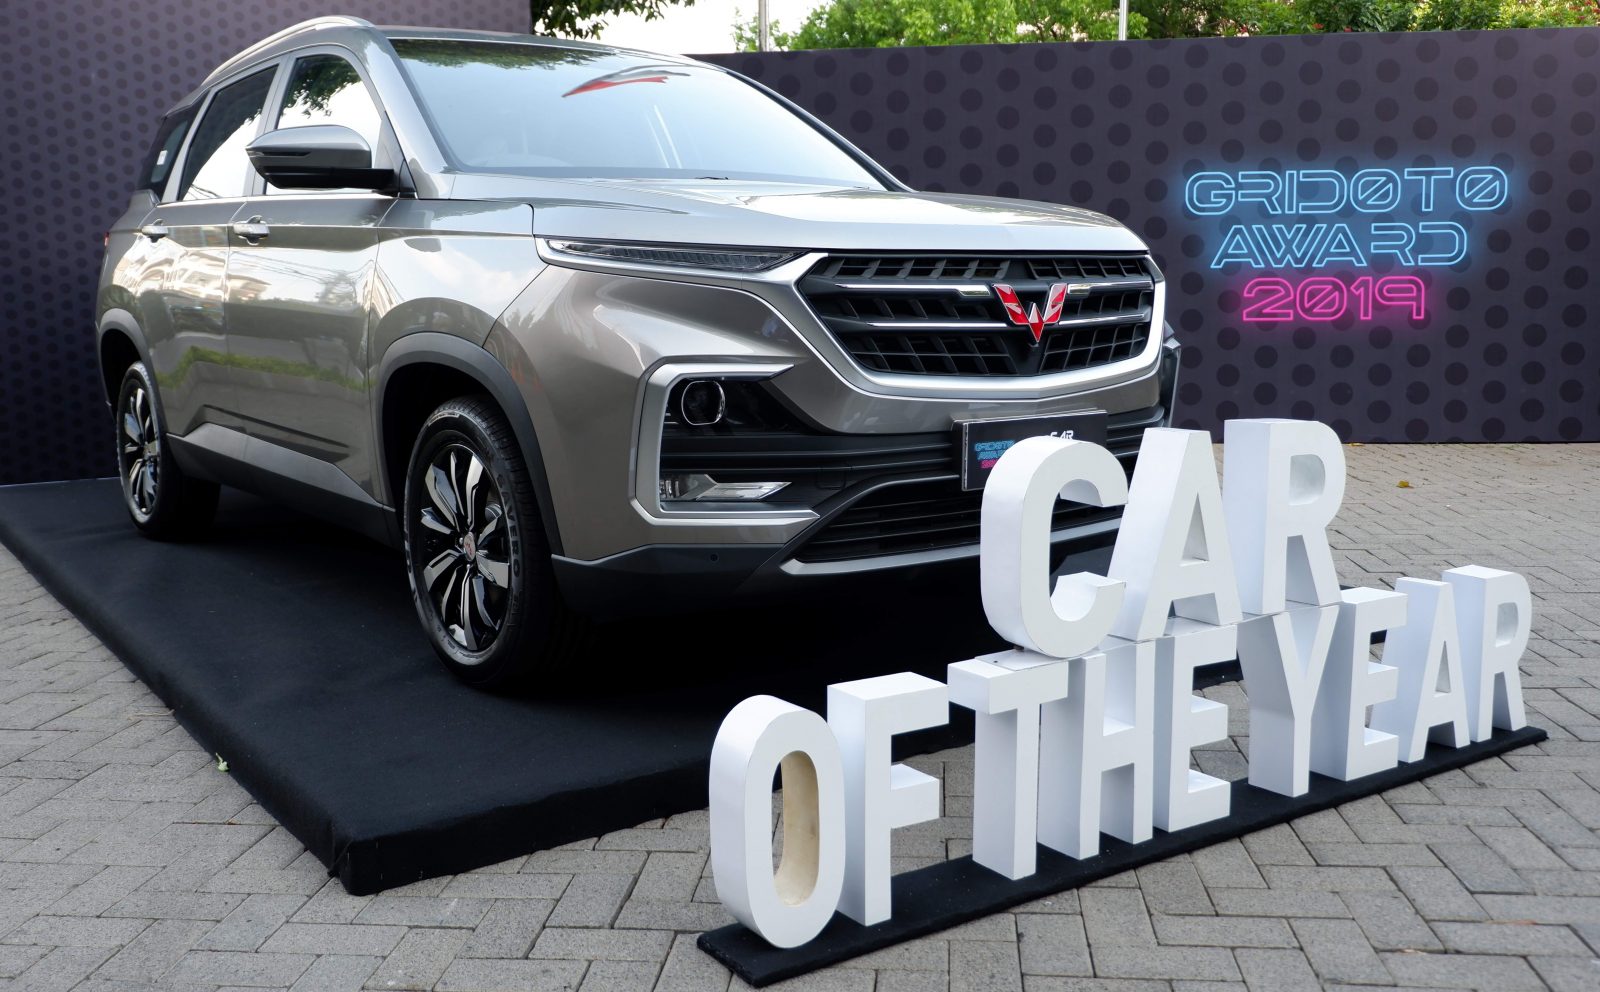 Image Wuling Almaz Raih Gelar Car of The Year di Ajang Gridoto Award 2019